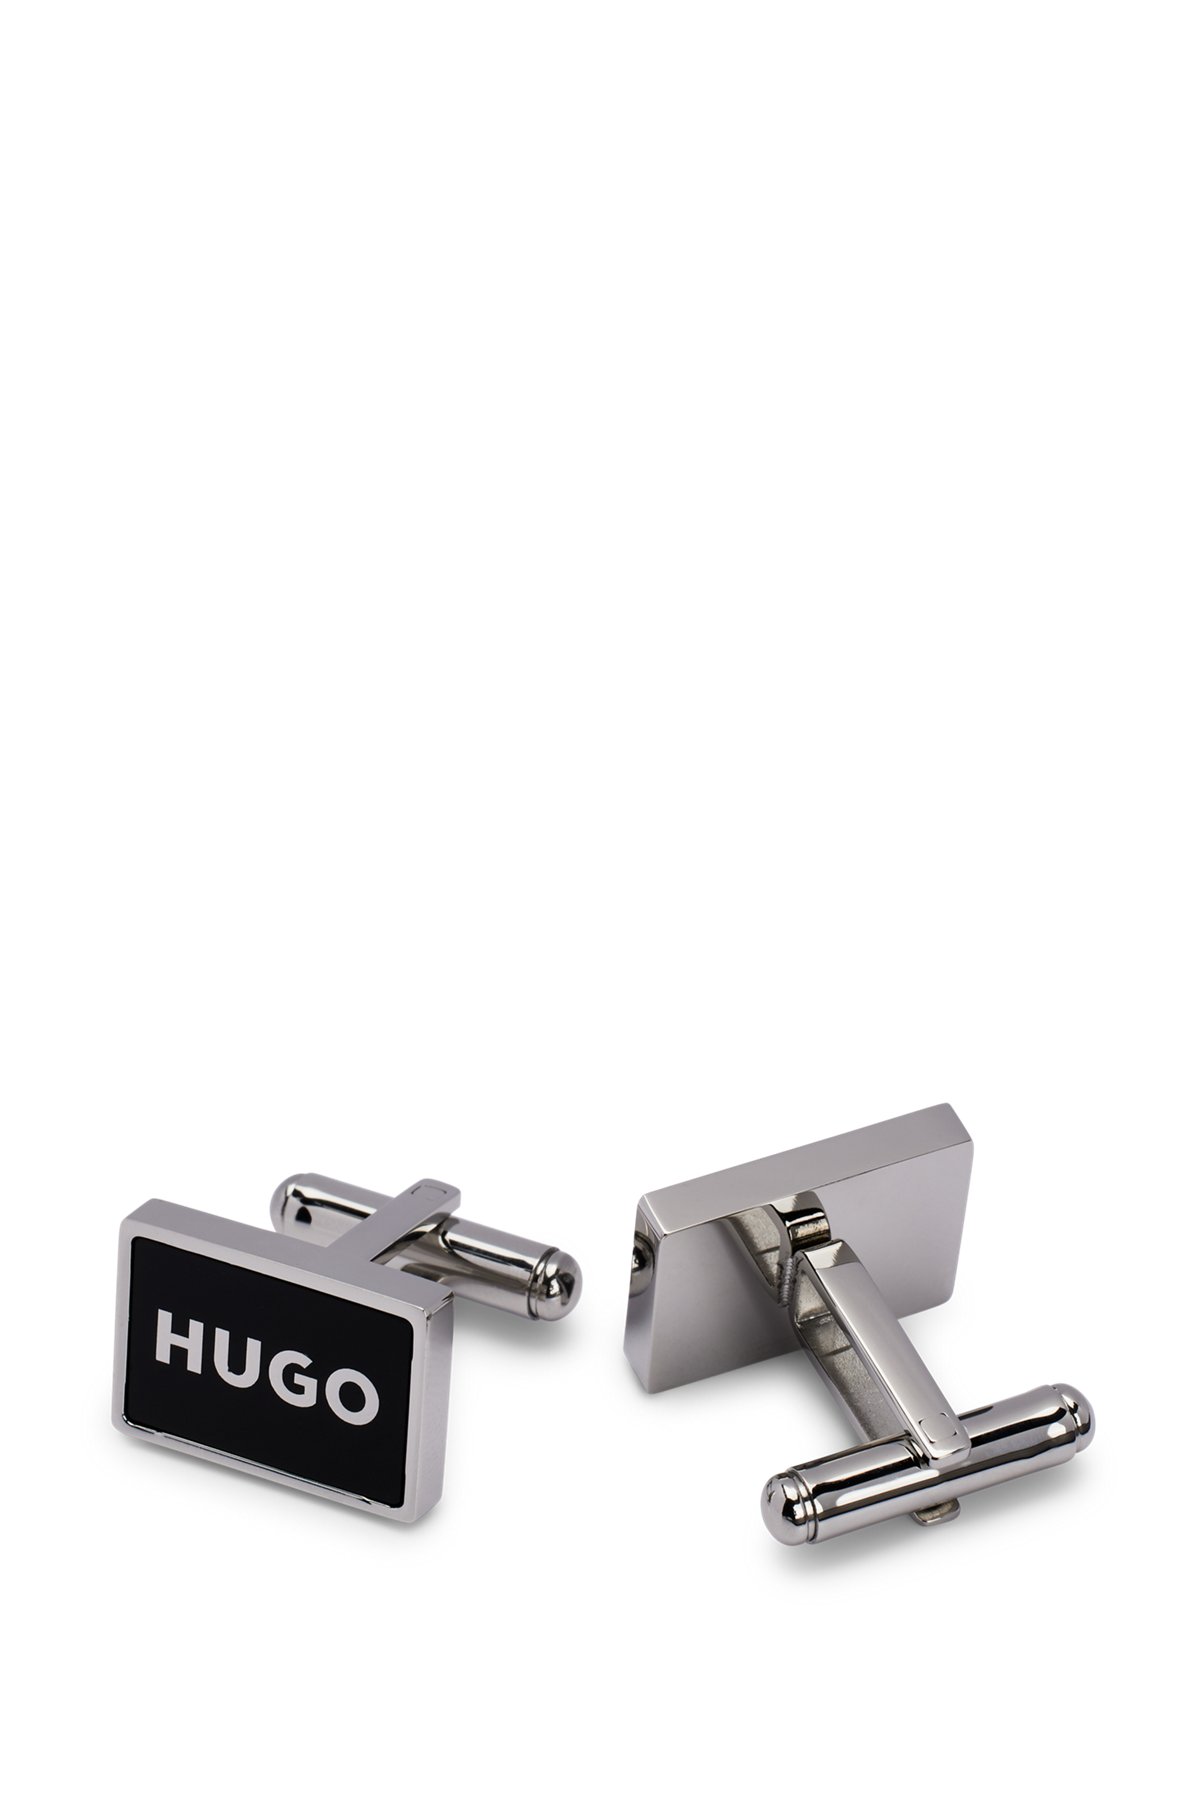 grijnzend Redelijk opleggen HUGO - Manchetknopen met omrand logo in zwart email